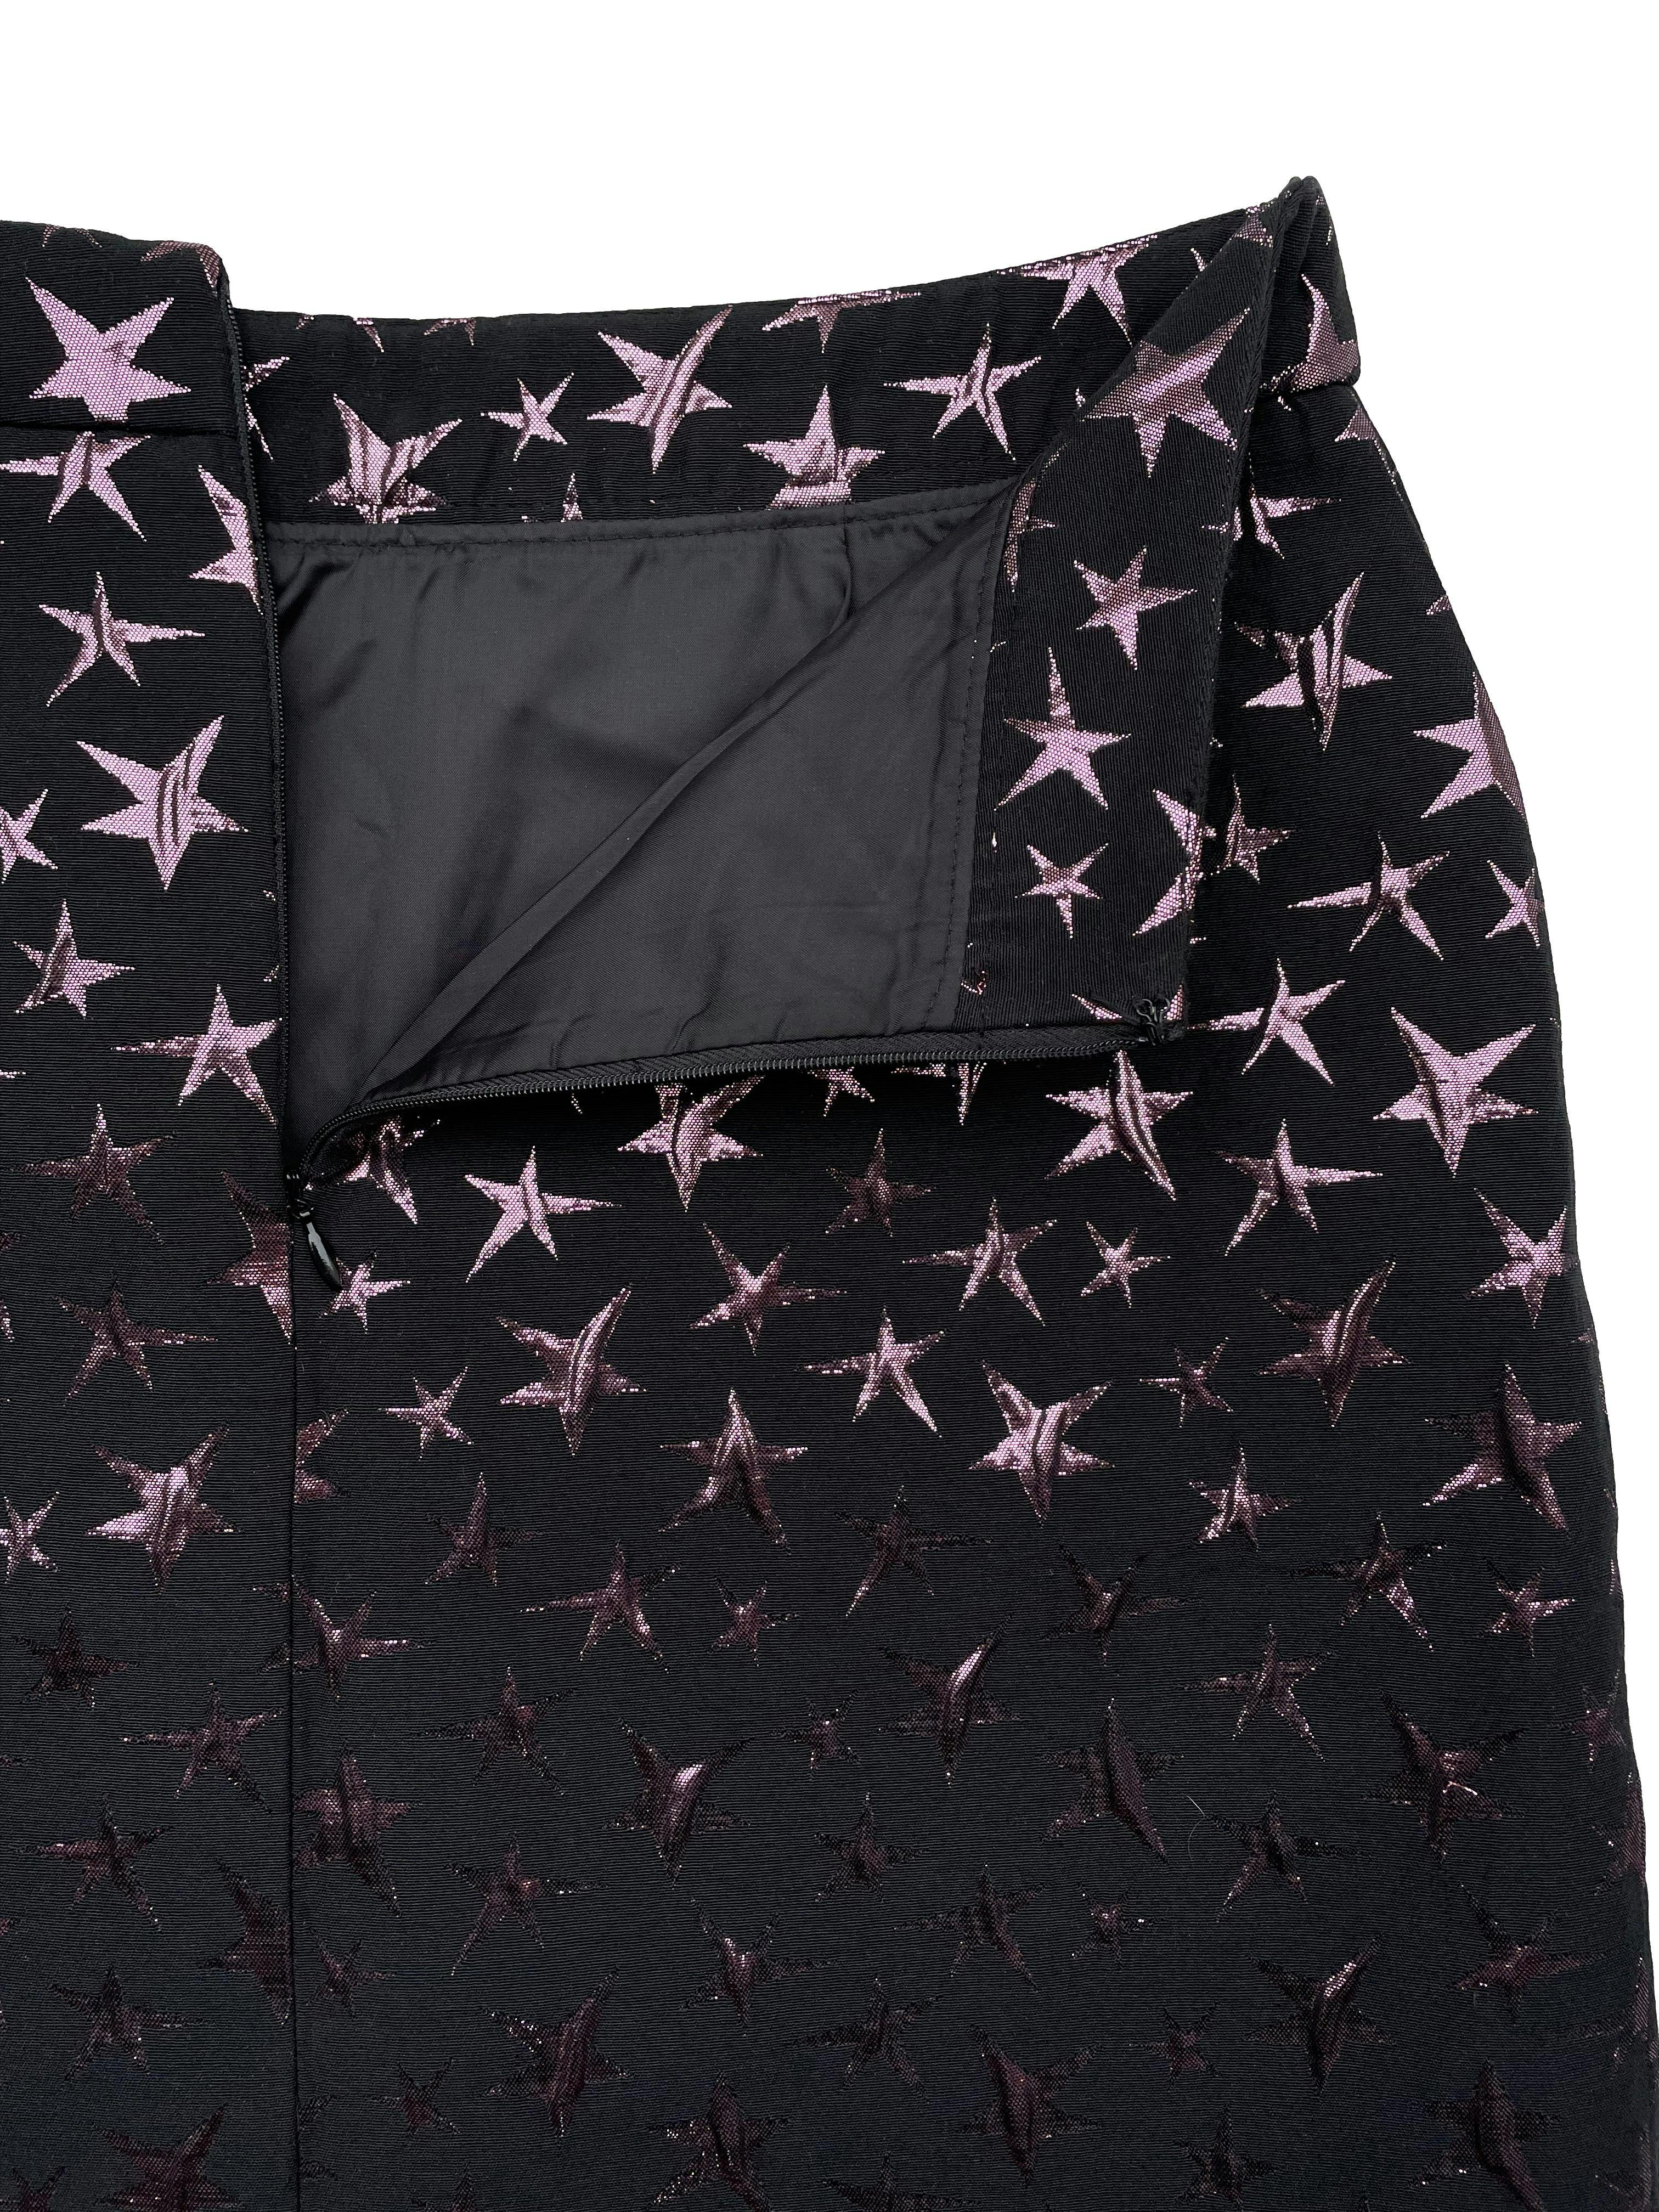 Falda estructurada Warehouse negra con estrellas metalizadas, forrada y con cierre posterior. Cintura 76cm Largo 47cm